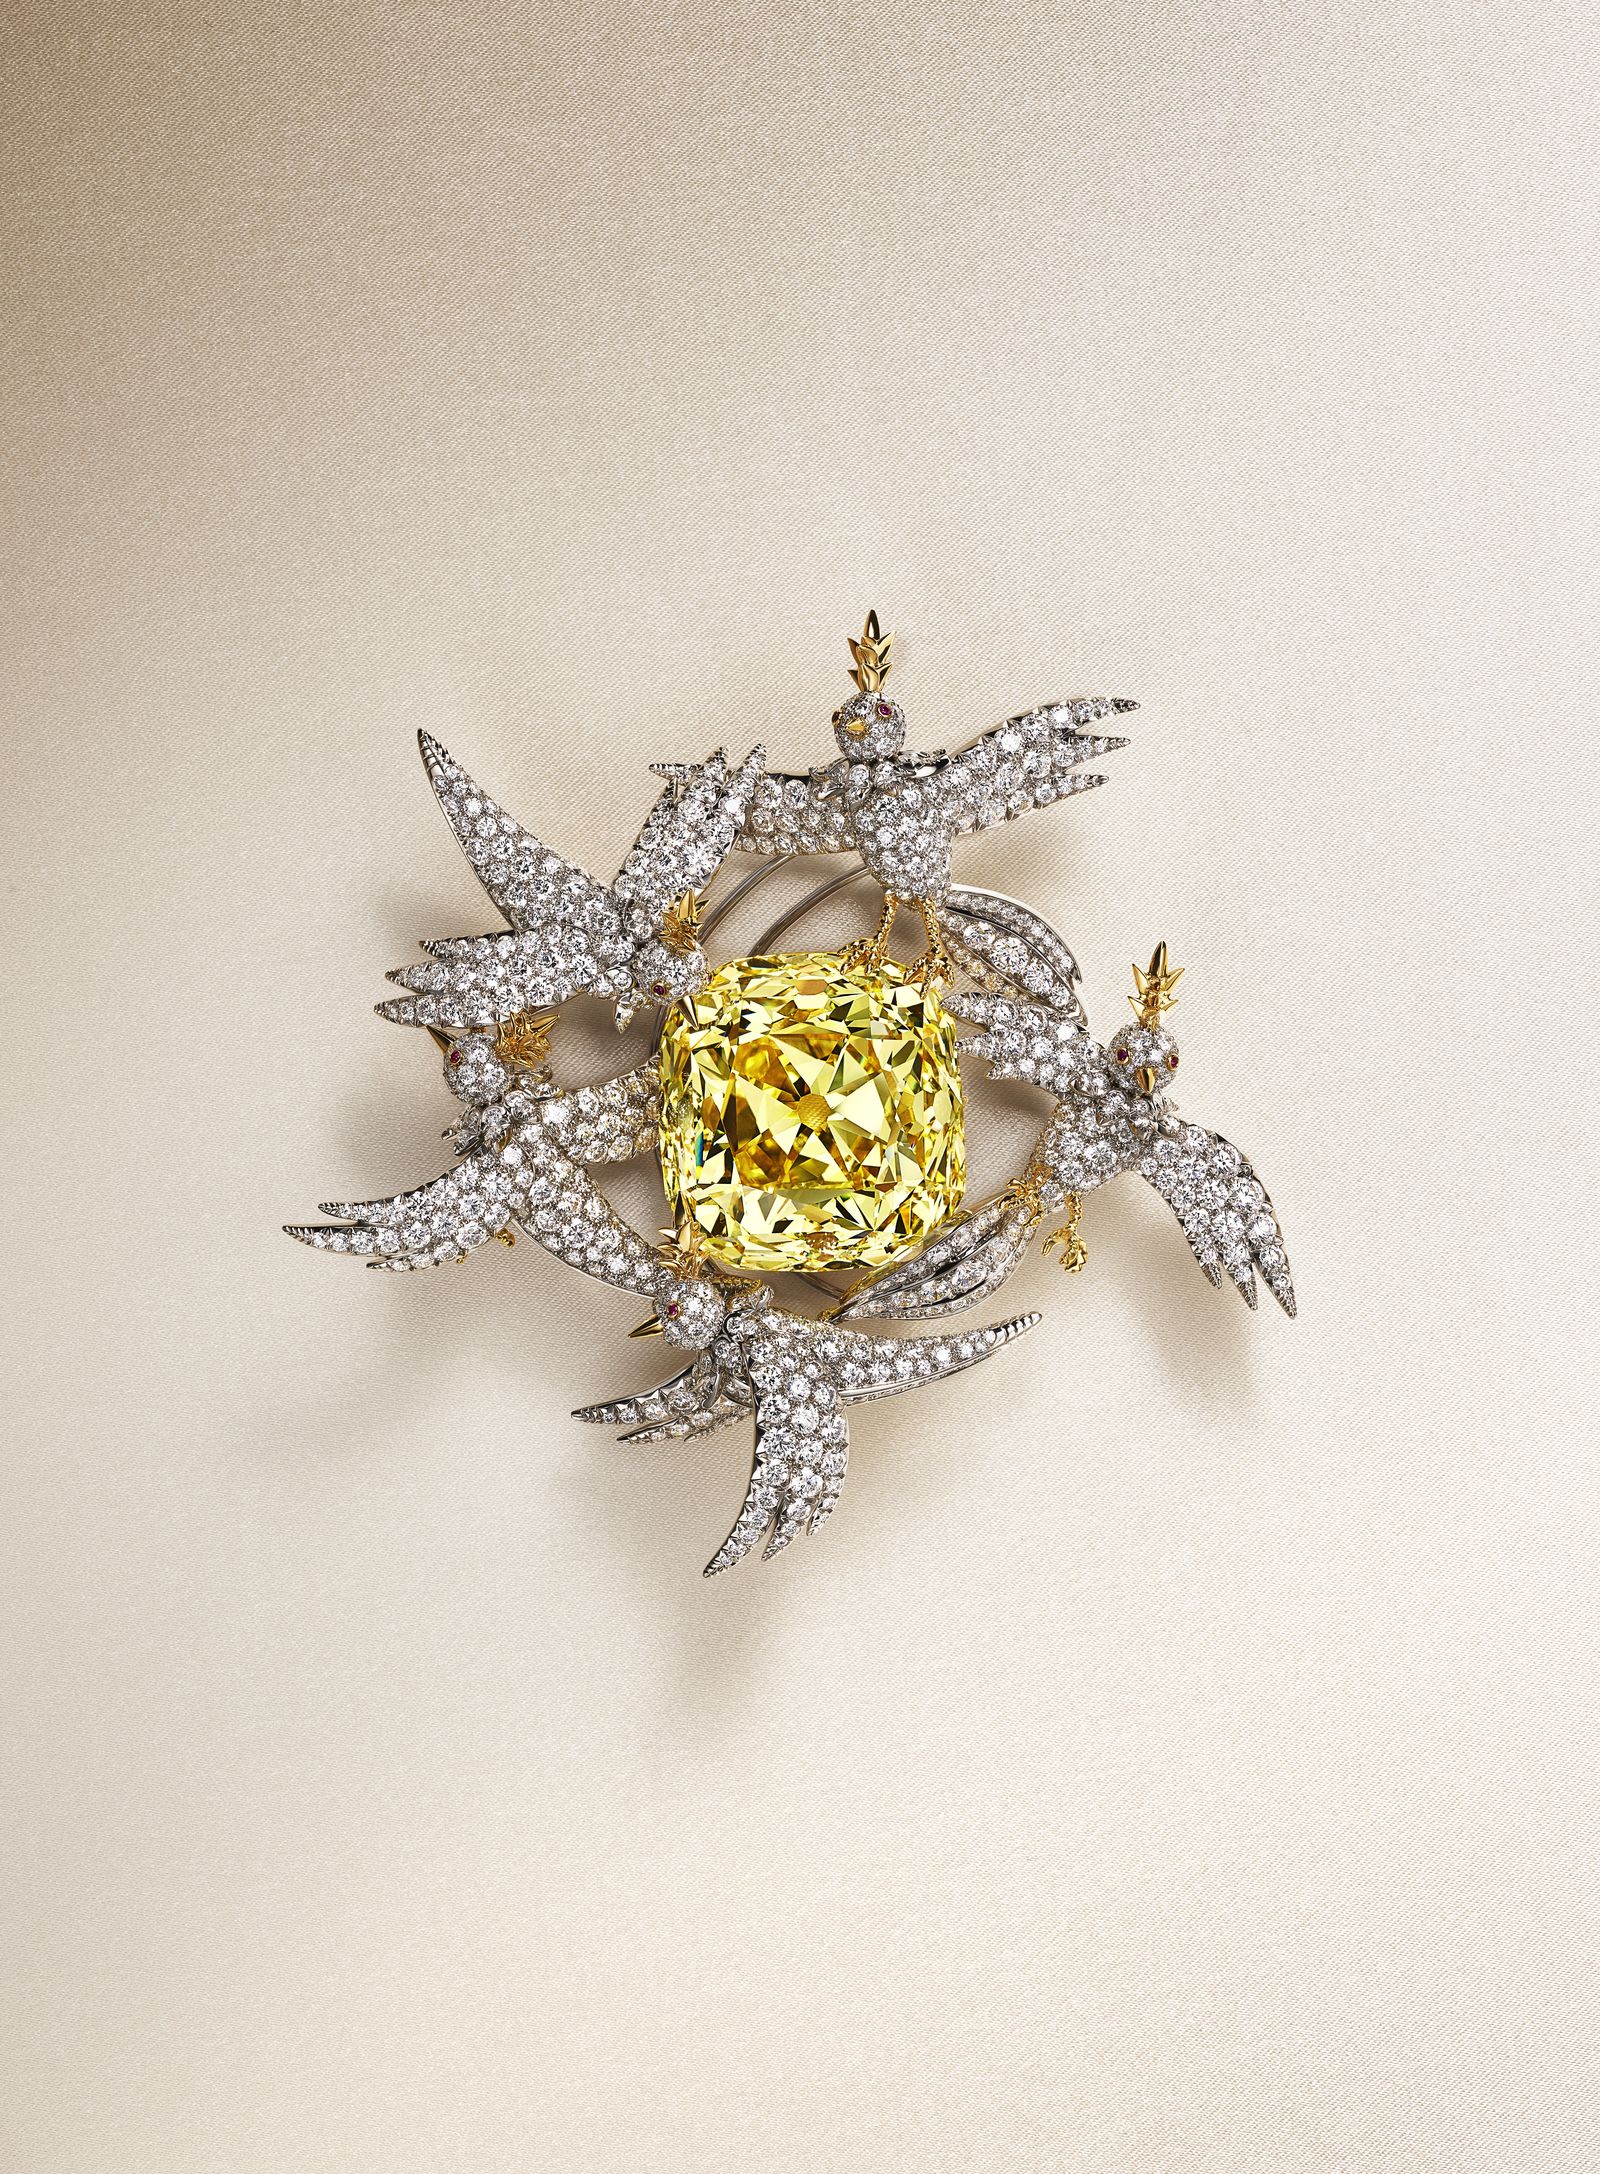 Новый образ знаменитого бриллианта Tiffany Diamond